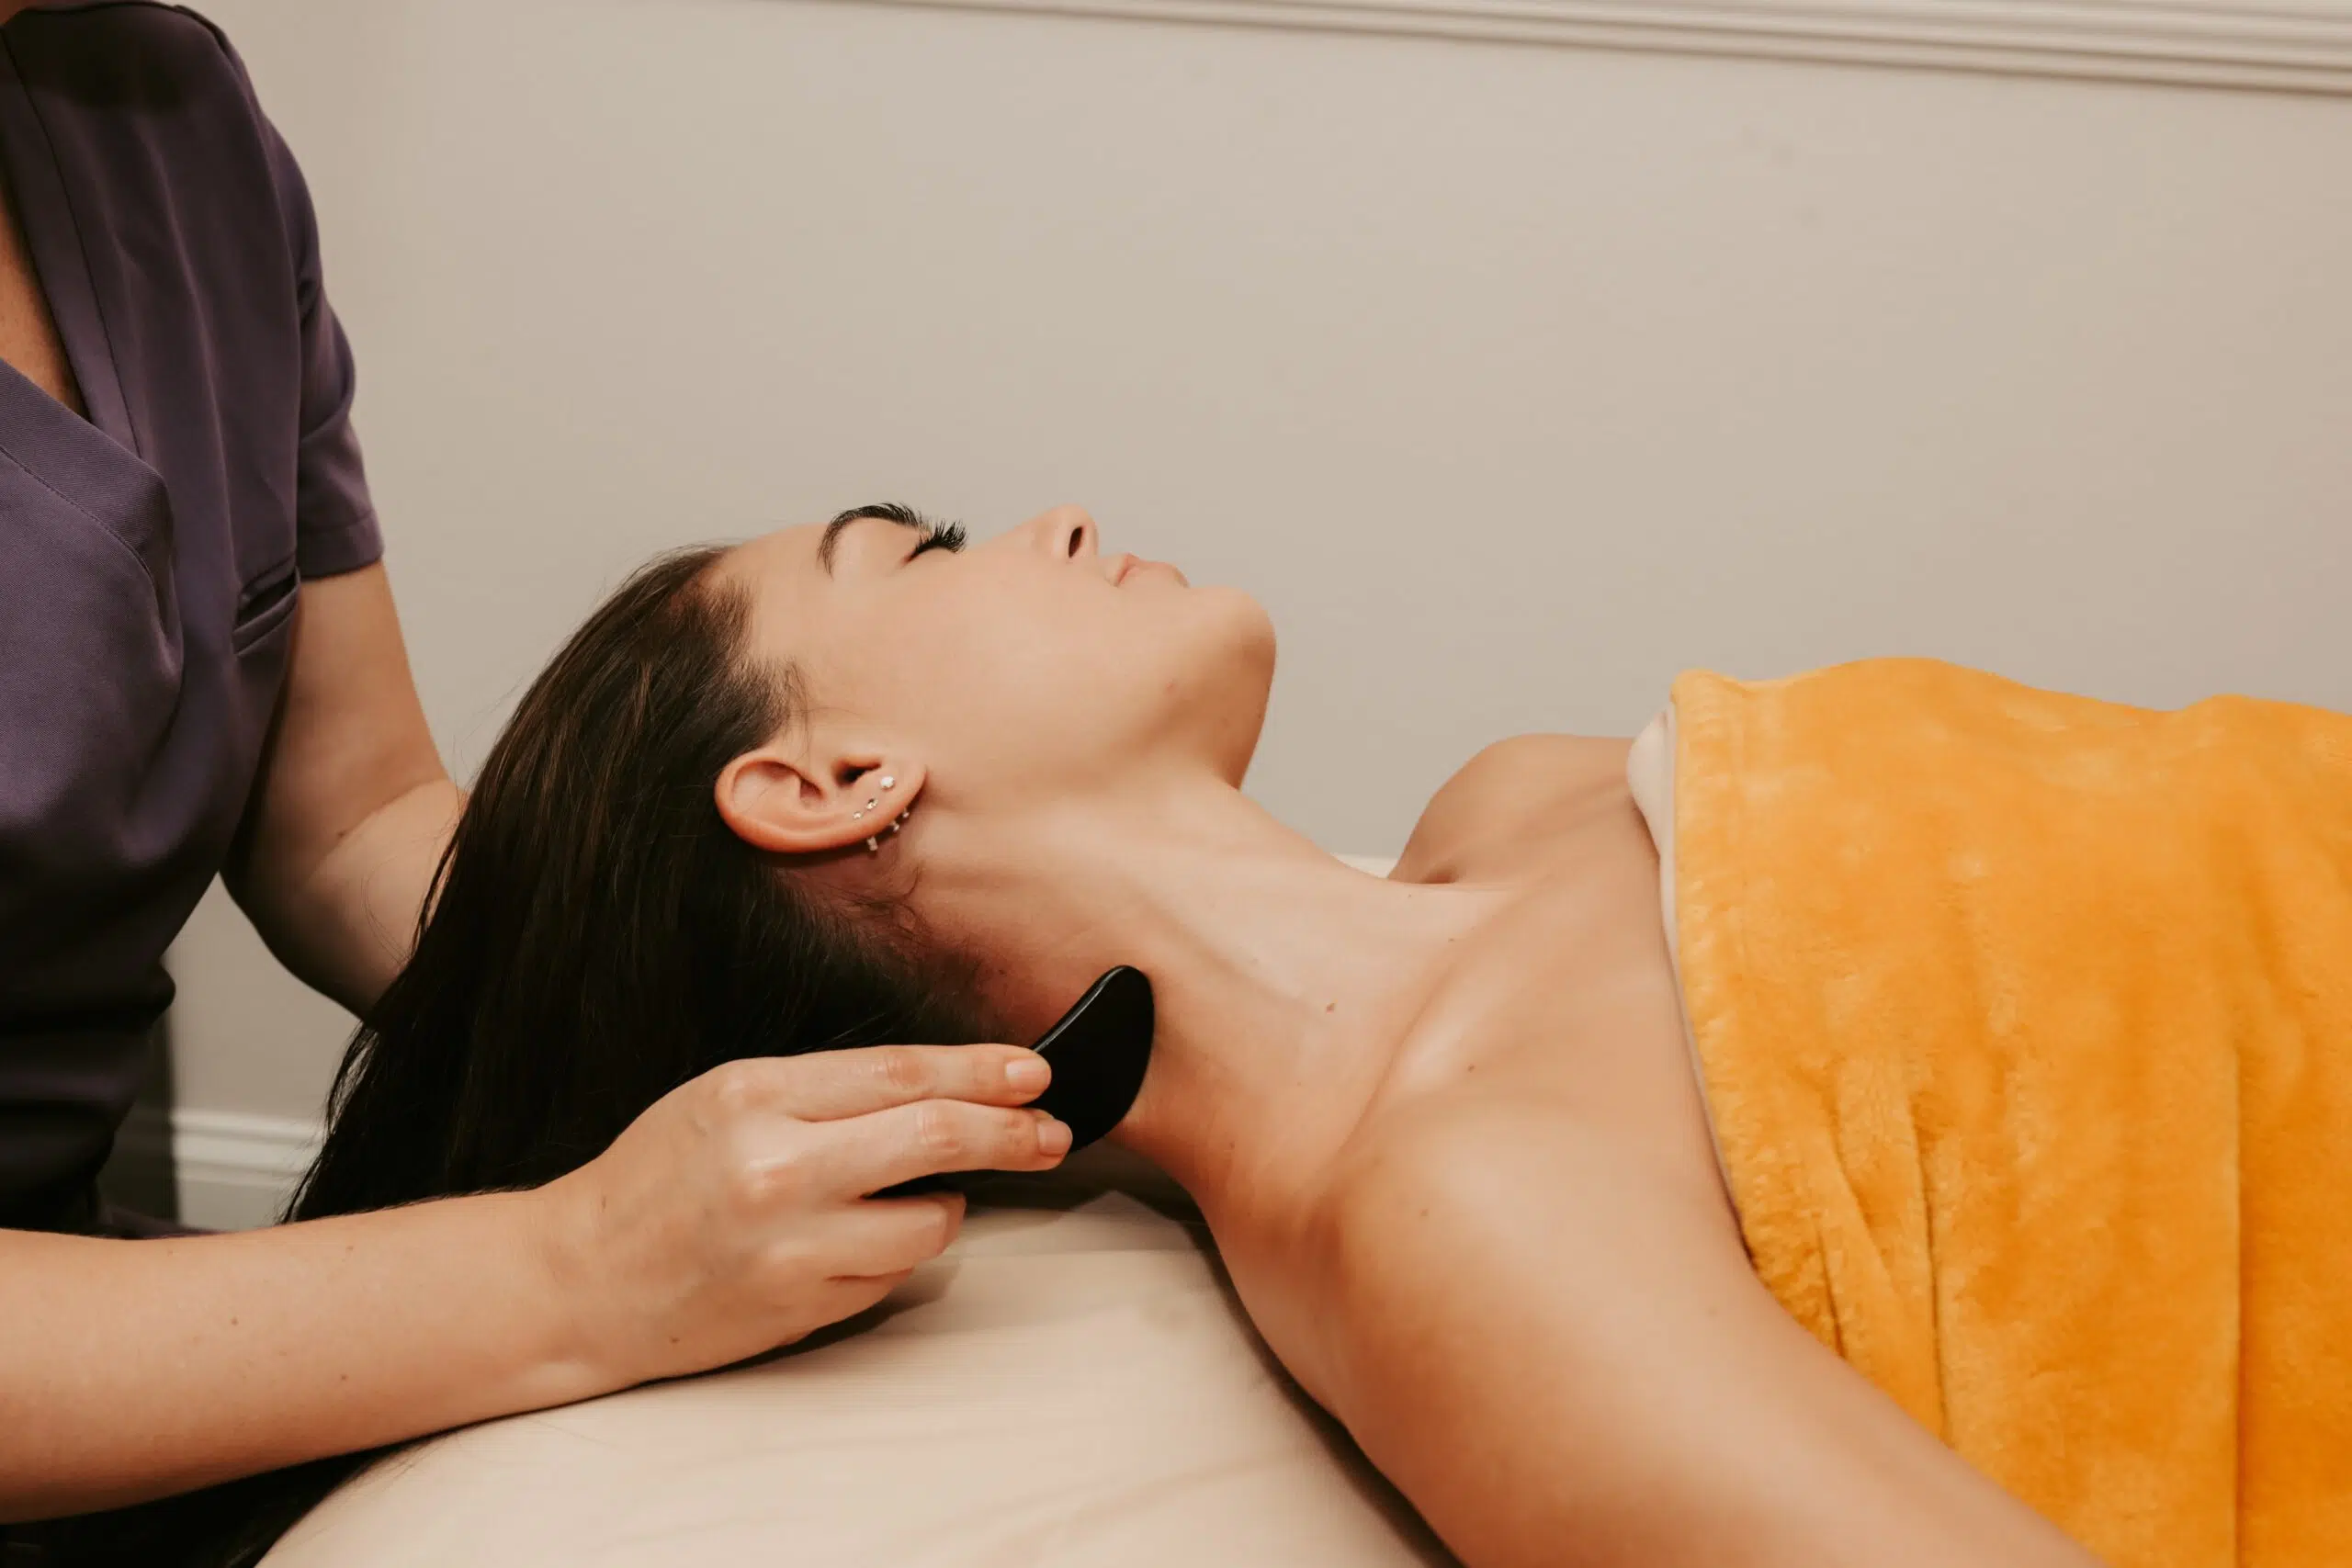 Reflexology Massage